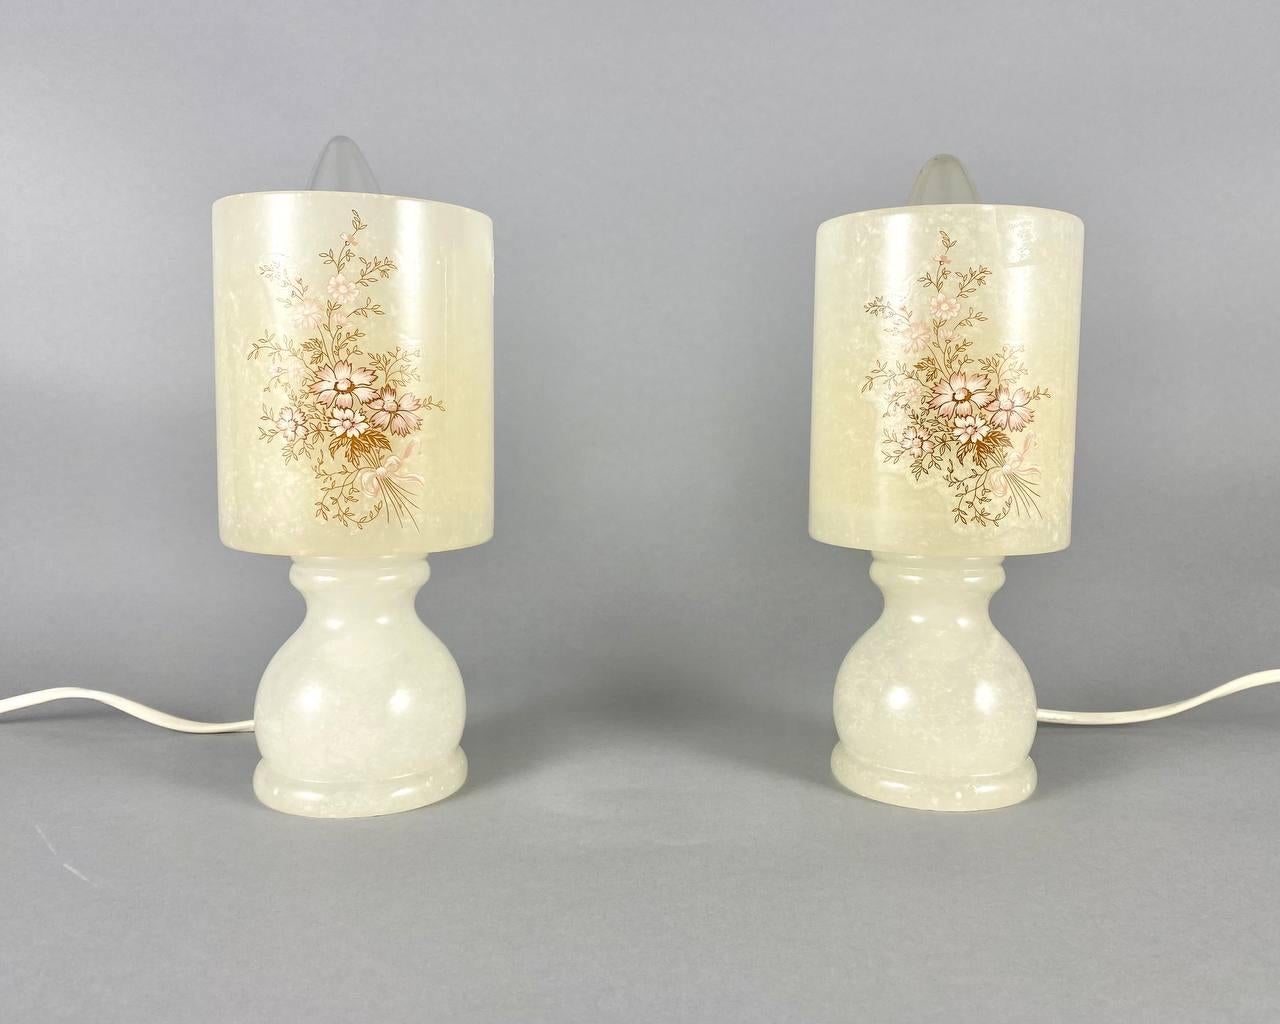 Petites lampes de table en marbre.

 Lampes de chevet jumelées avec un beau décor floral sur des abat-jour de forme cylindrique.

Tous deux sont entièrement réalisés en marbre pour leur belle translucidité naturelle. C'est ce qui confère aux lampes